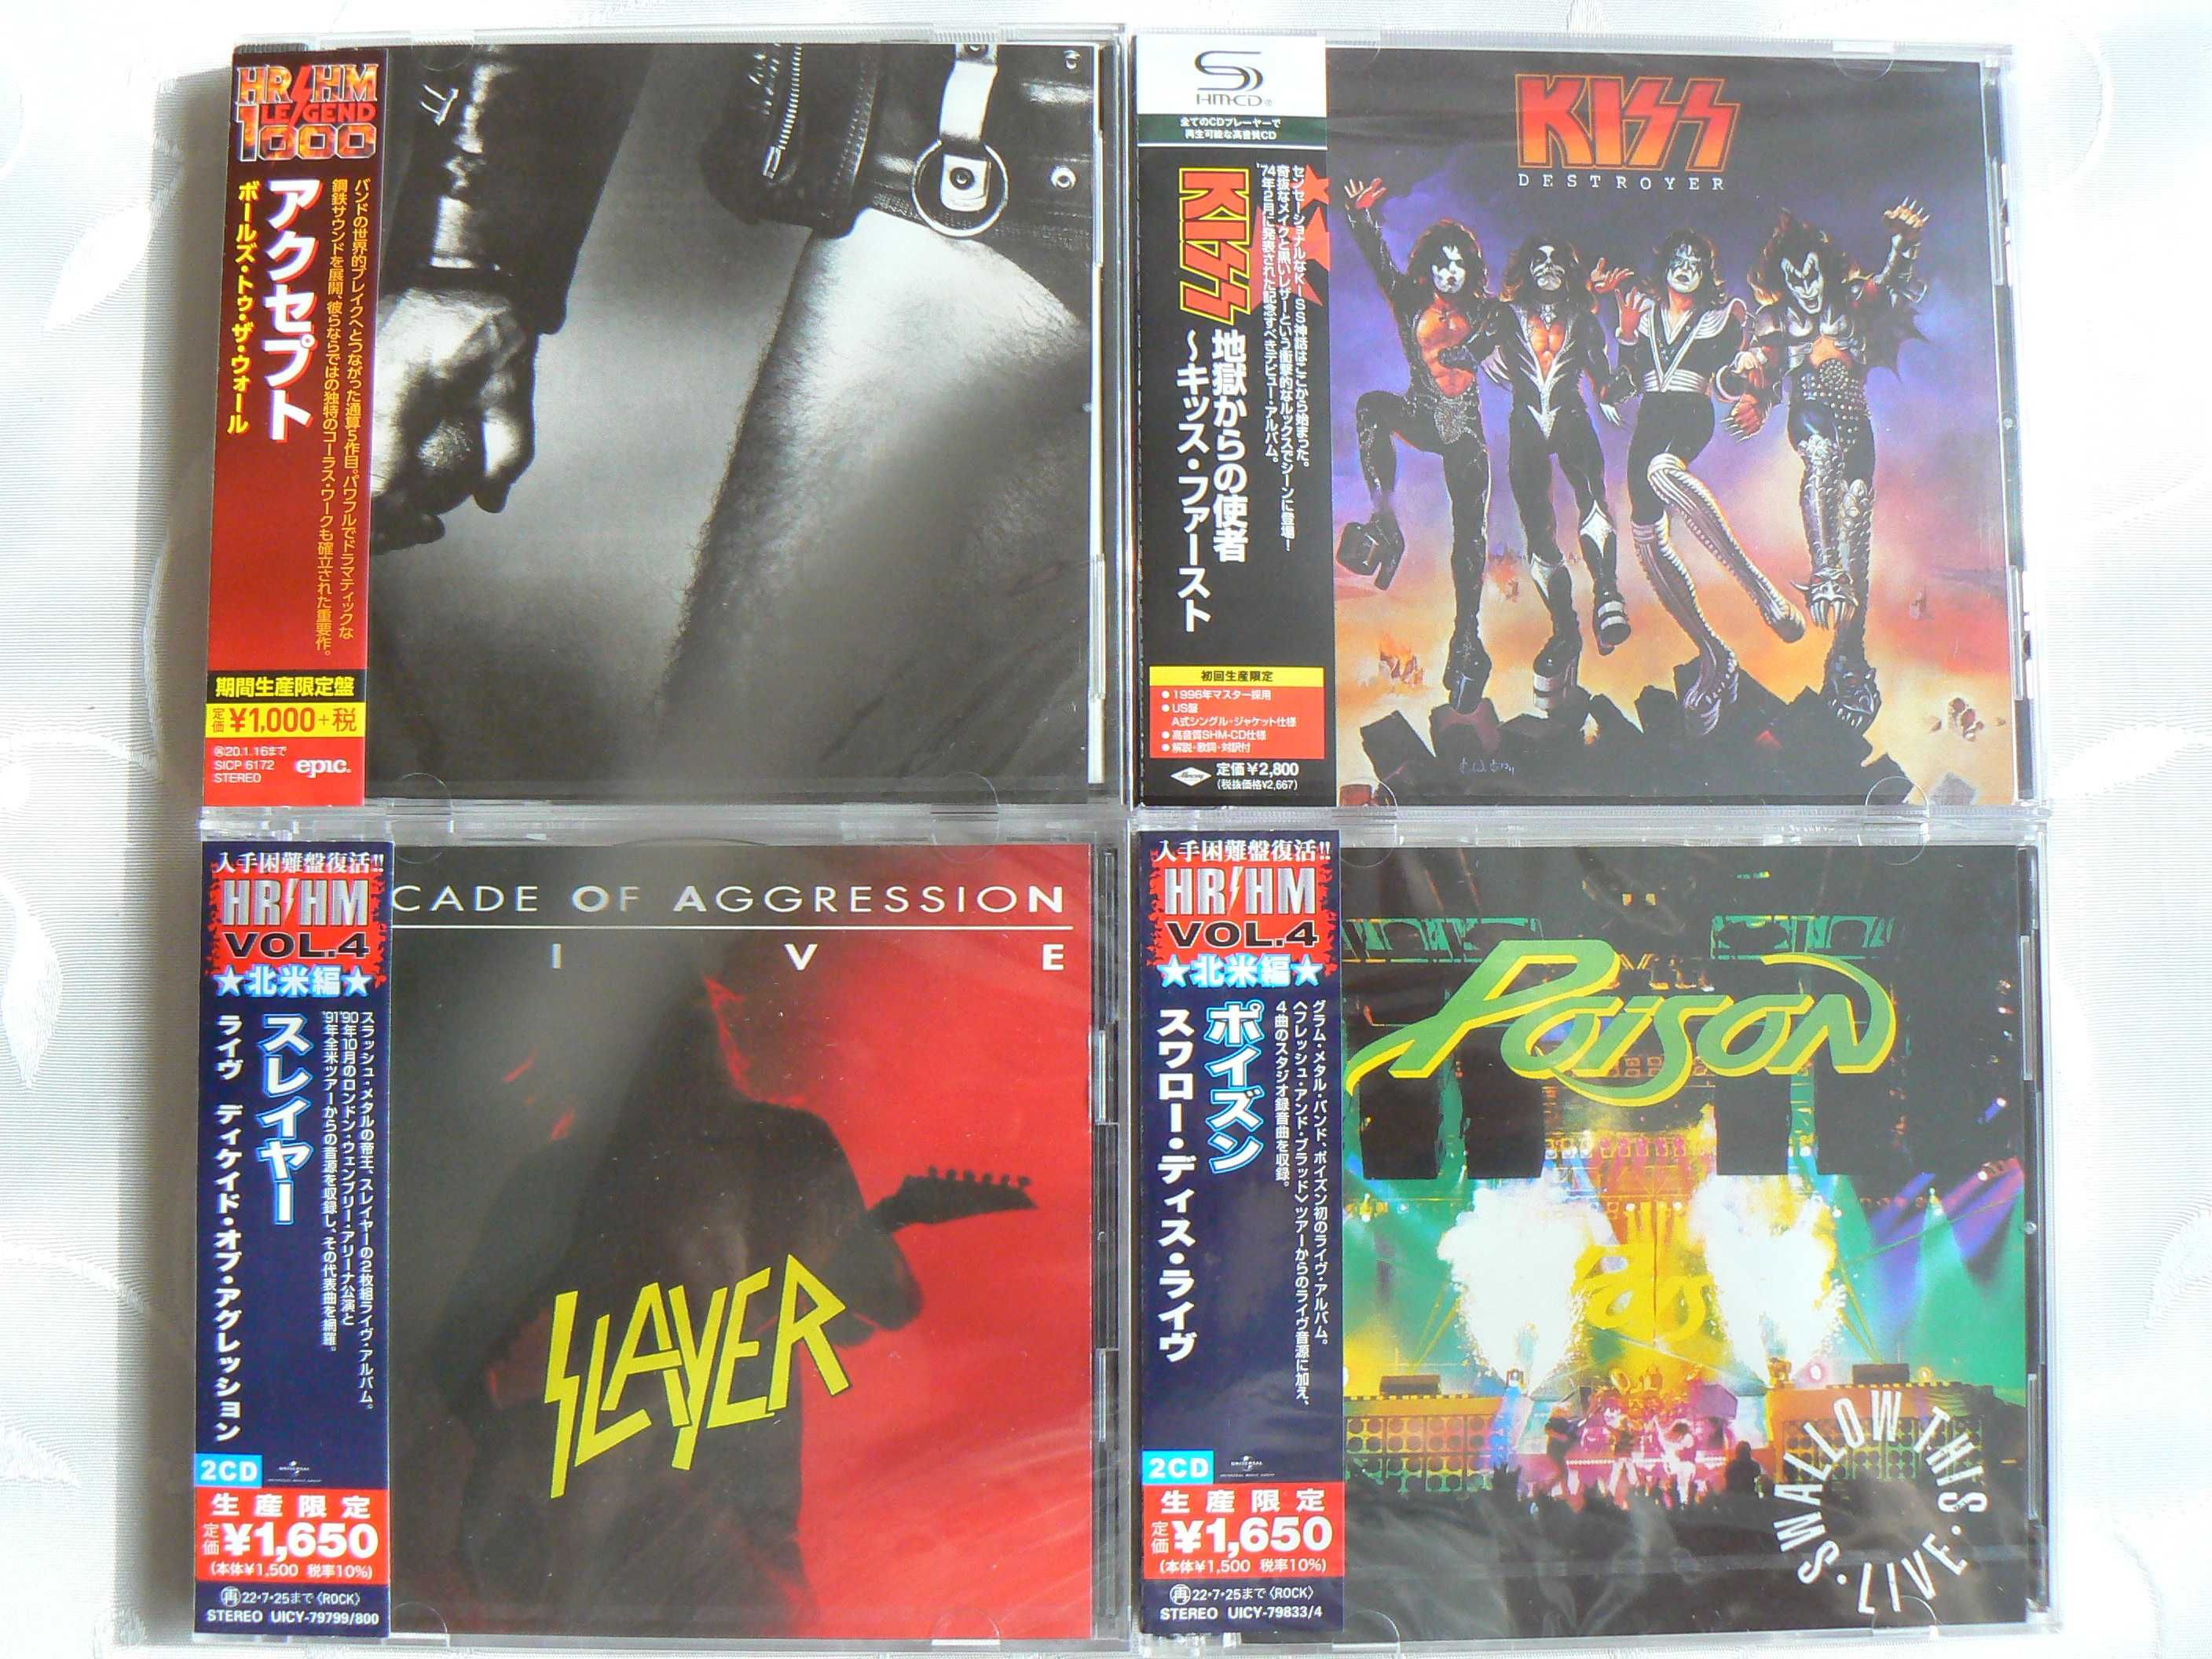 Японски дискове - Japan Disc